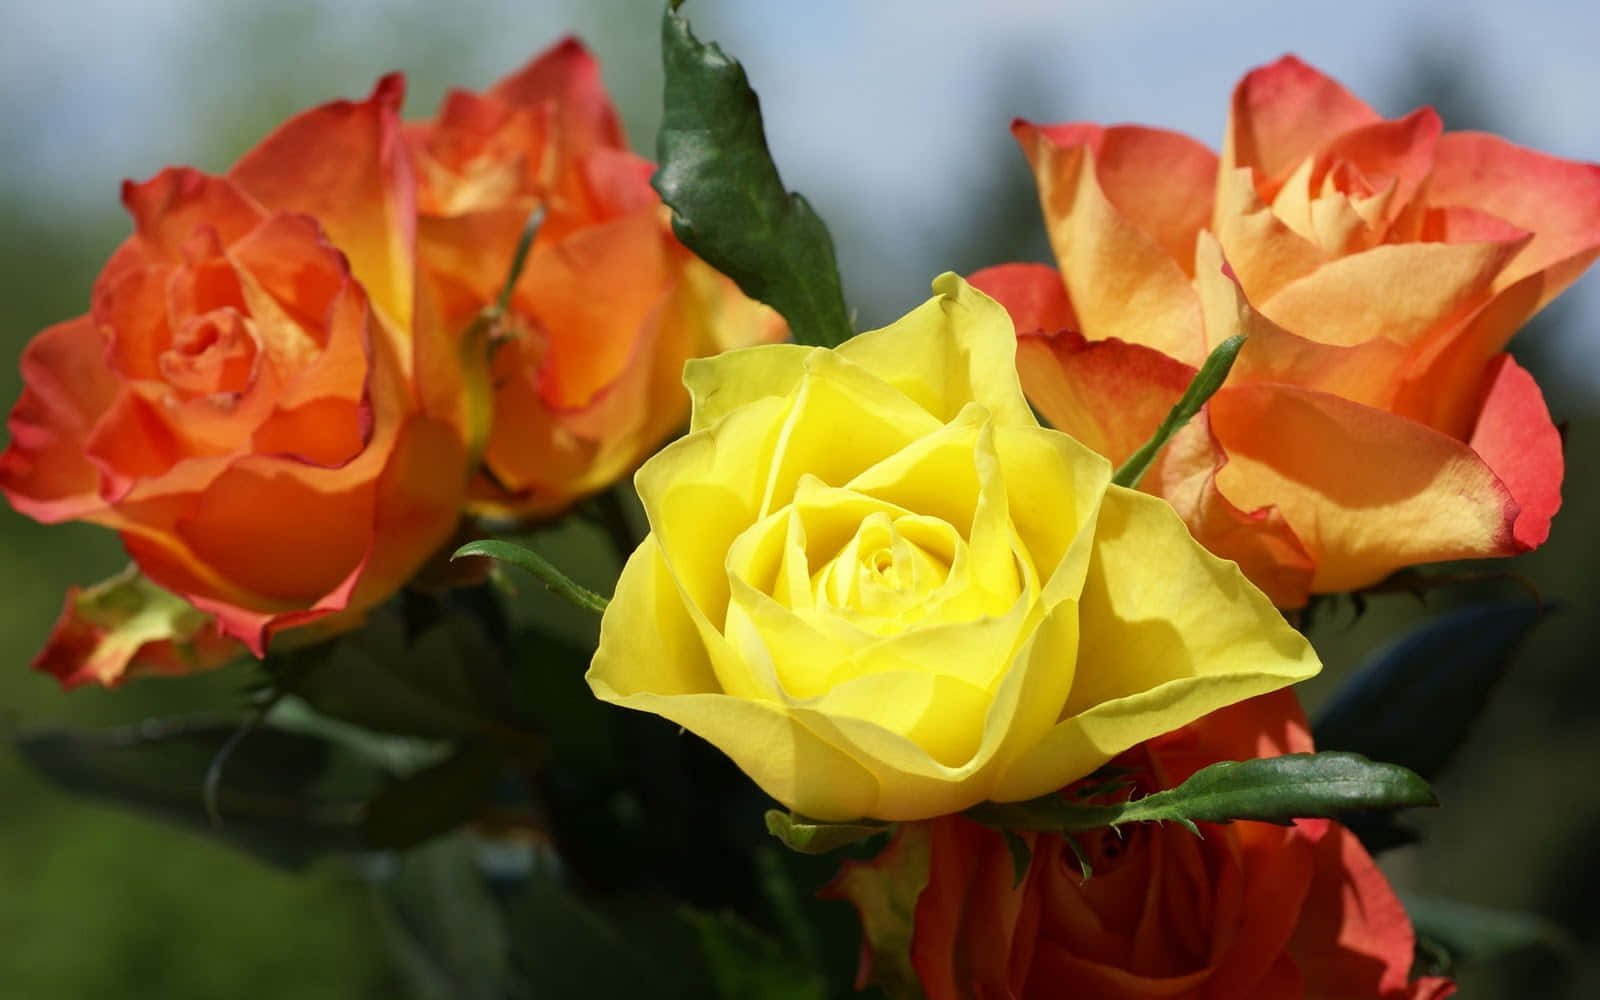 Incredibileesposizione Di Splendide Rose Del Giardino In Fiore.